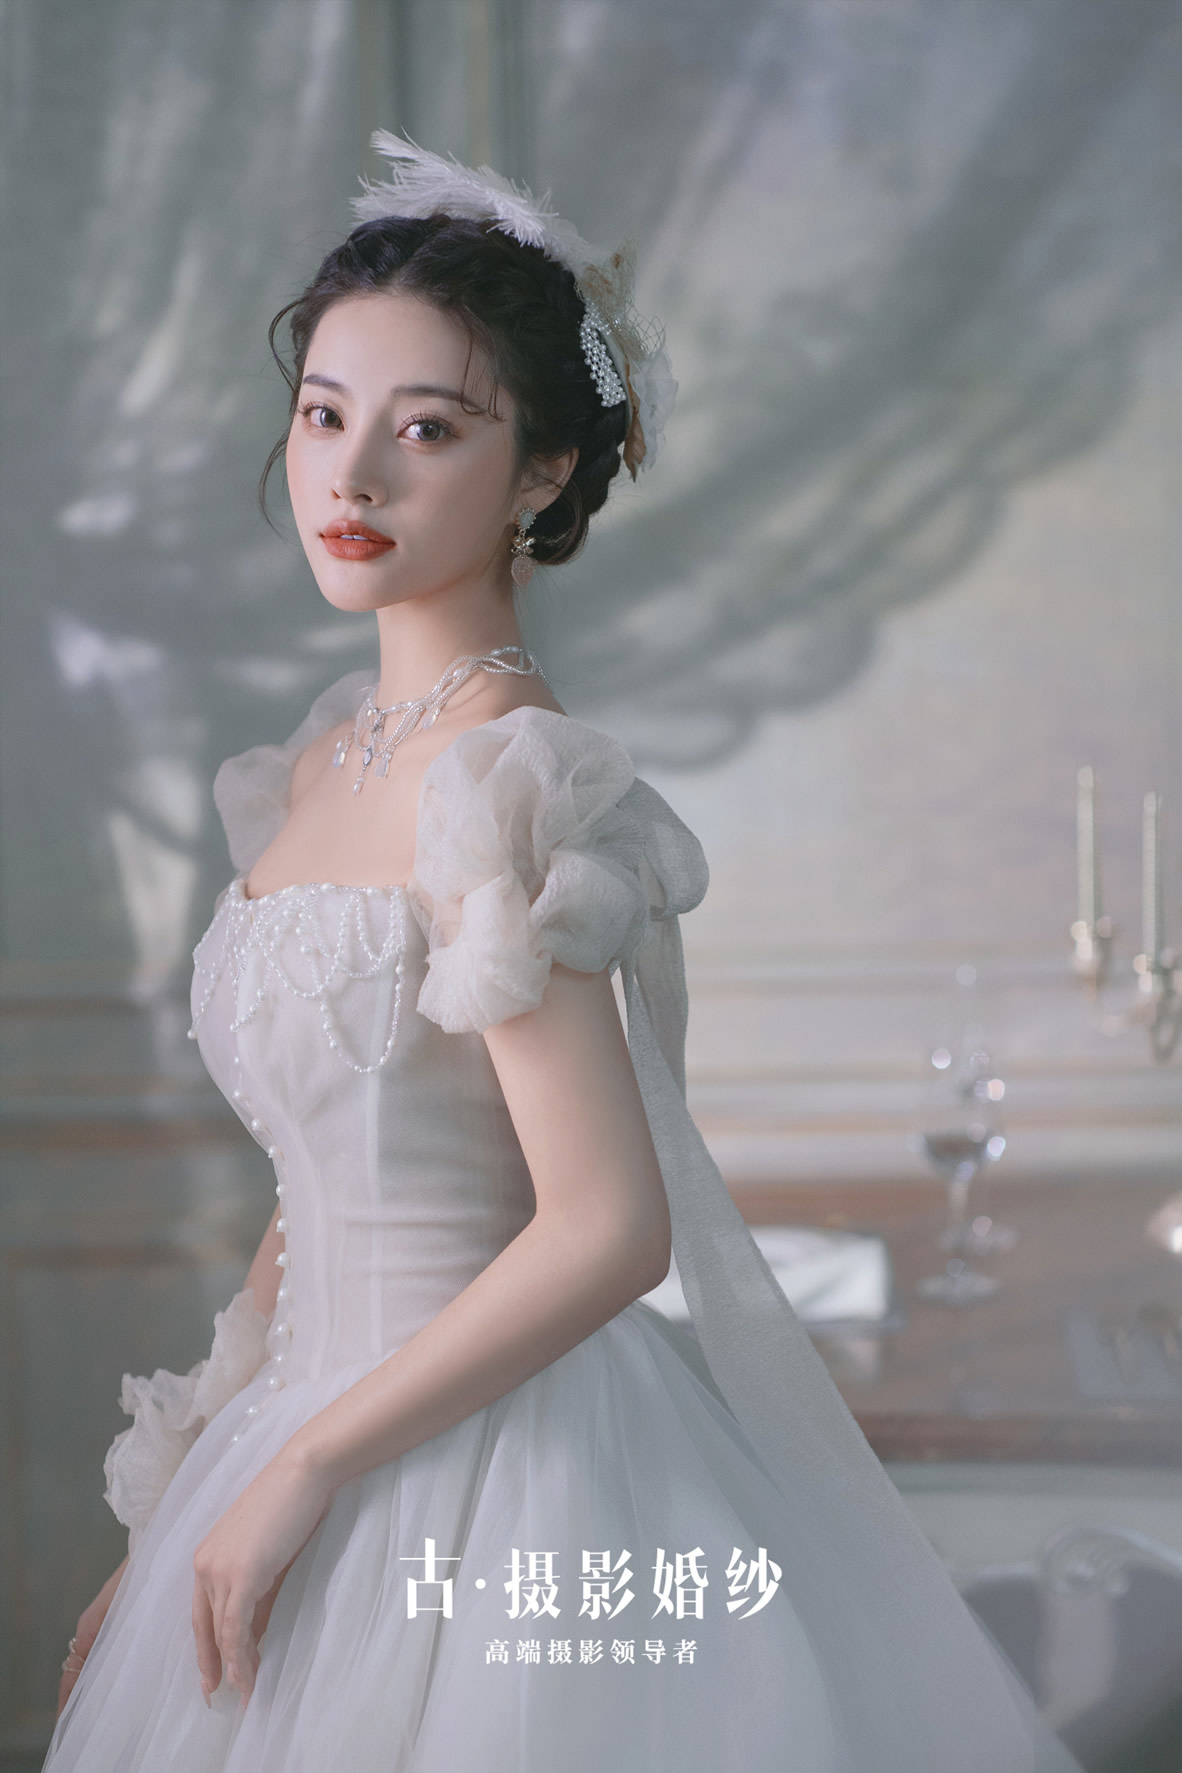 约瑟芬玫瑰 - 明星范 - 古摄影婚纱艺术-古摄影成都婚纱摄影艺术摄影网